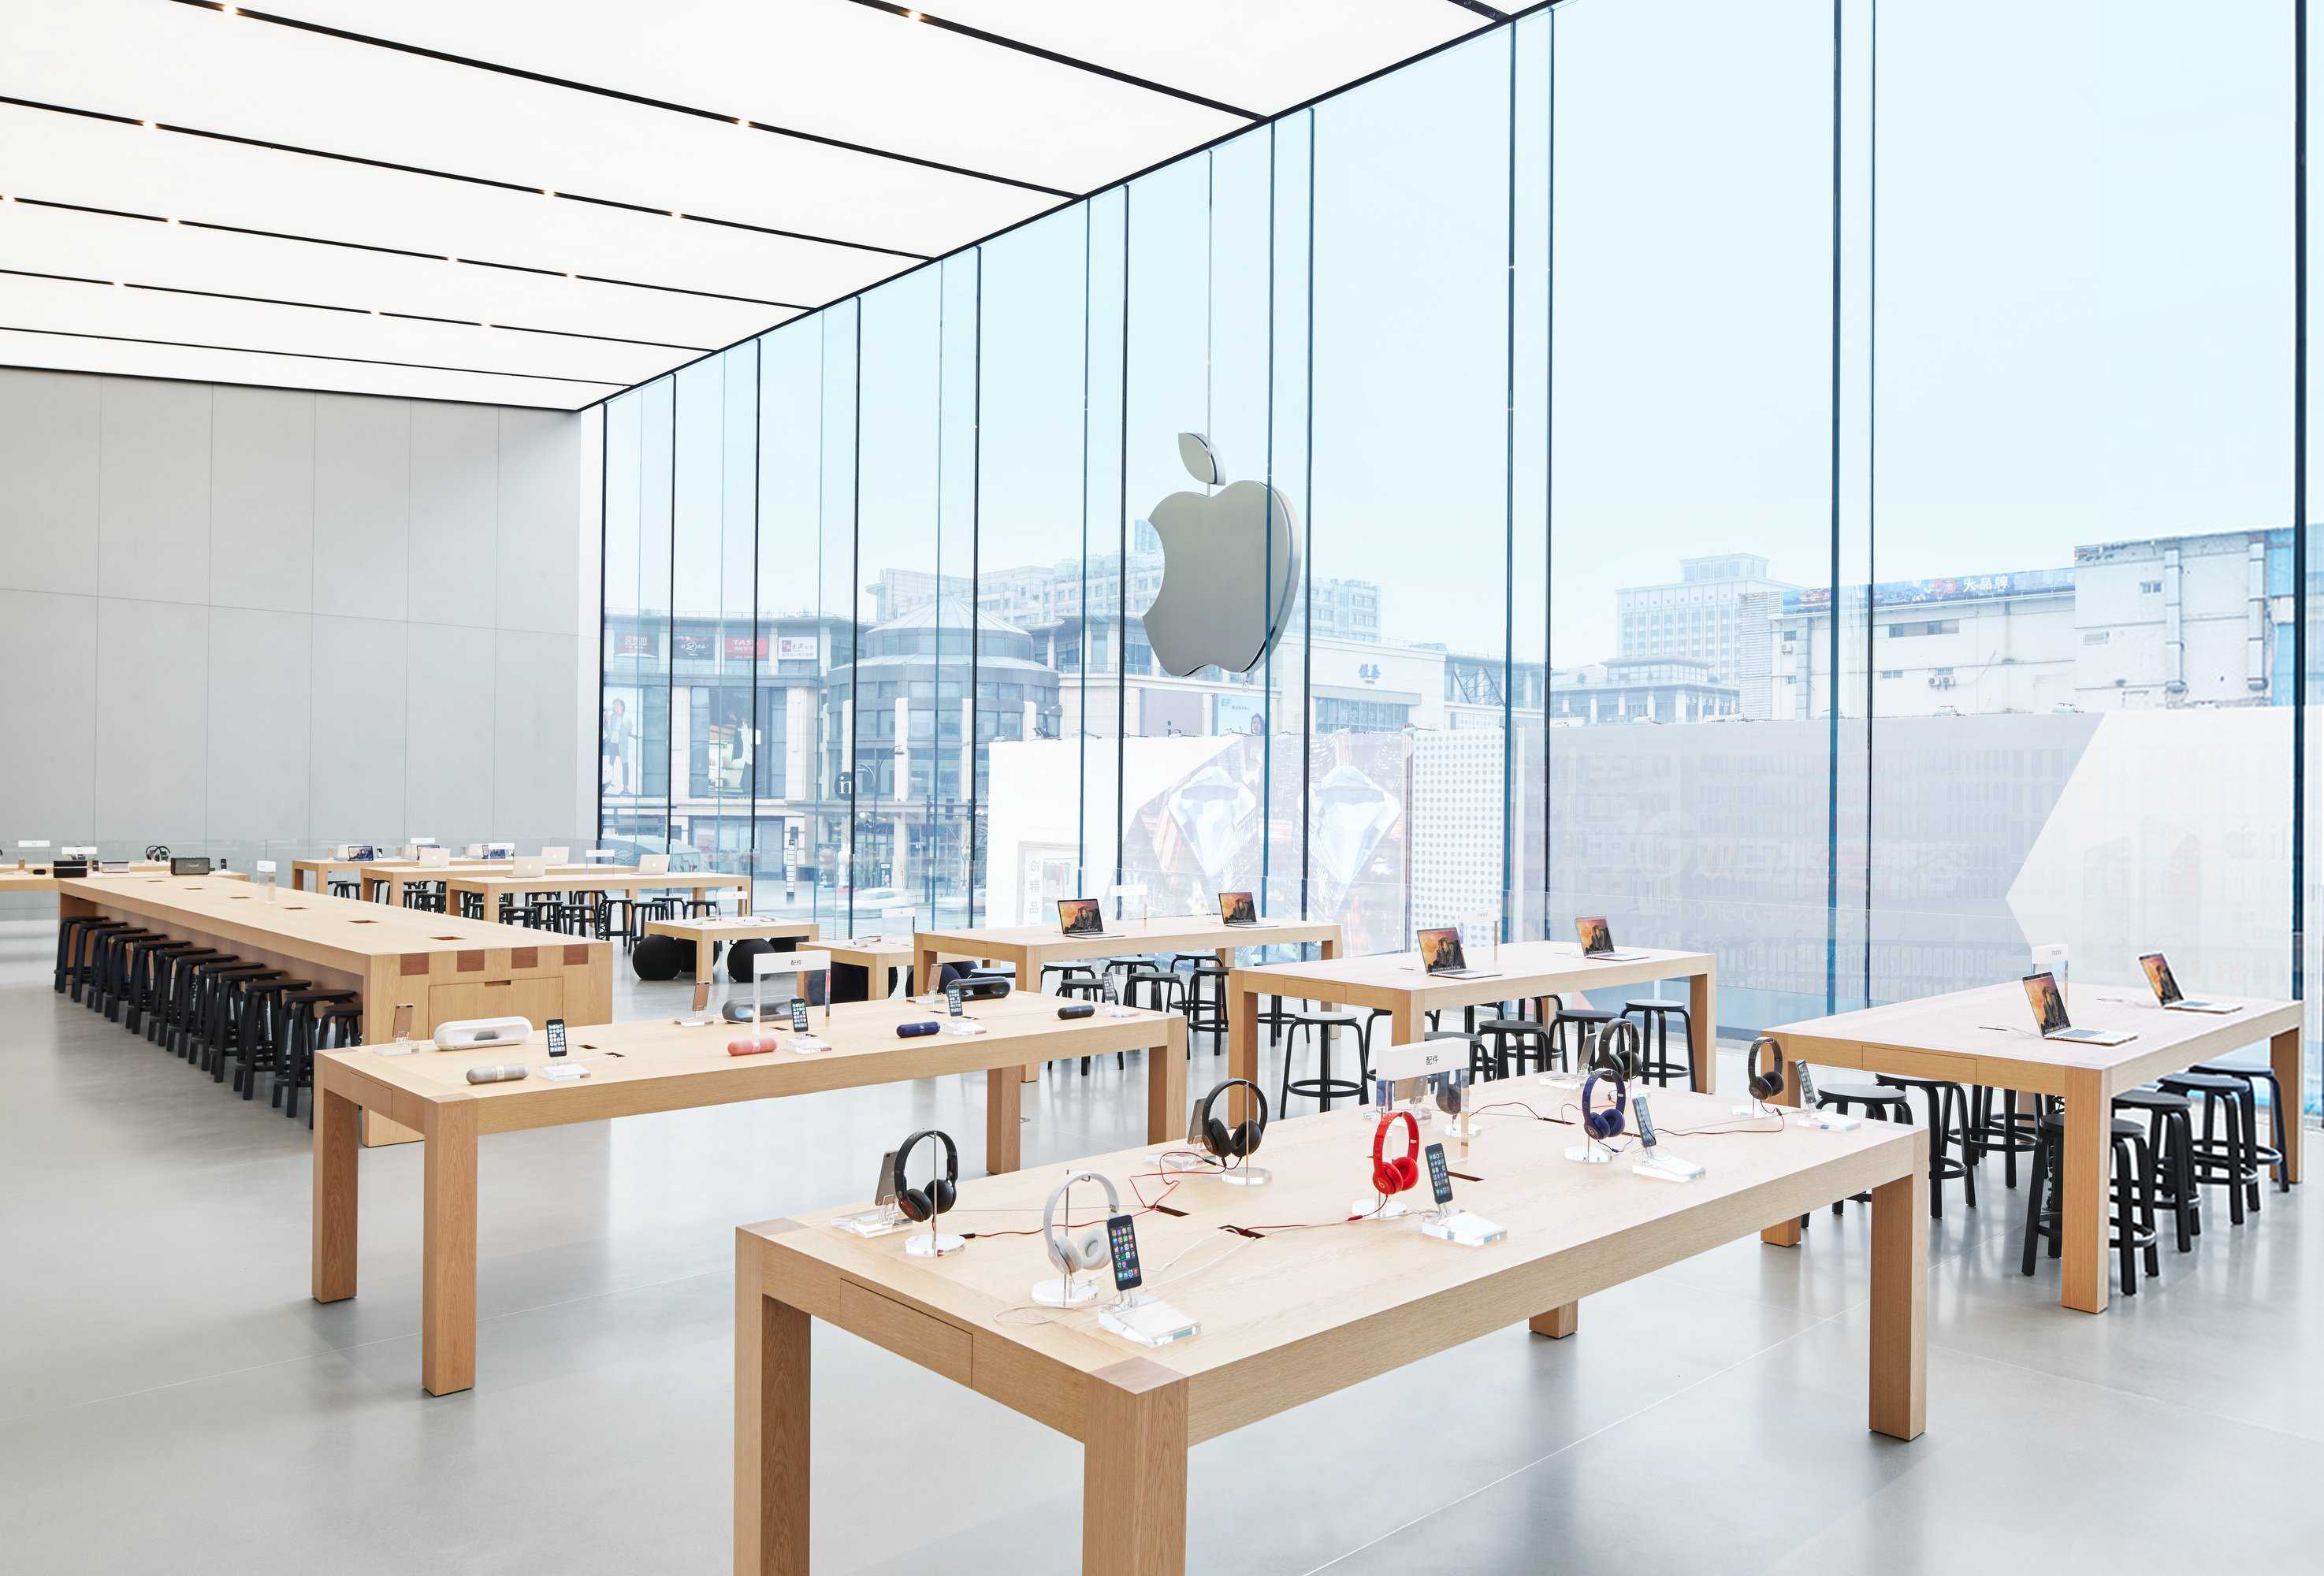 苹果产品专卖店展厅设计理念